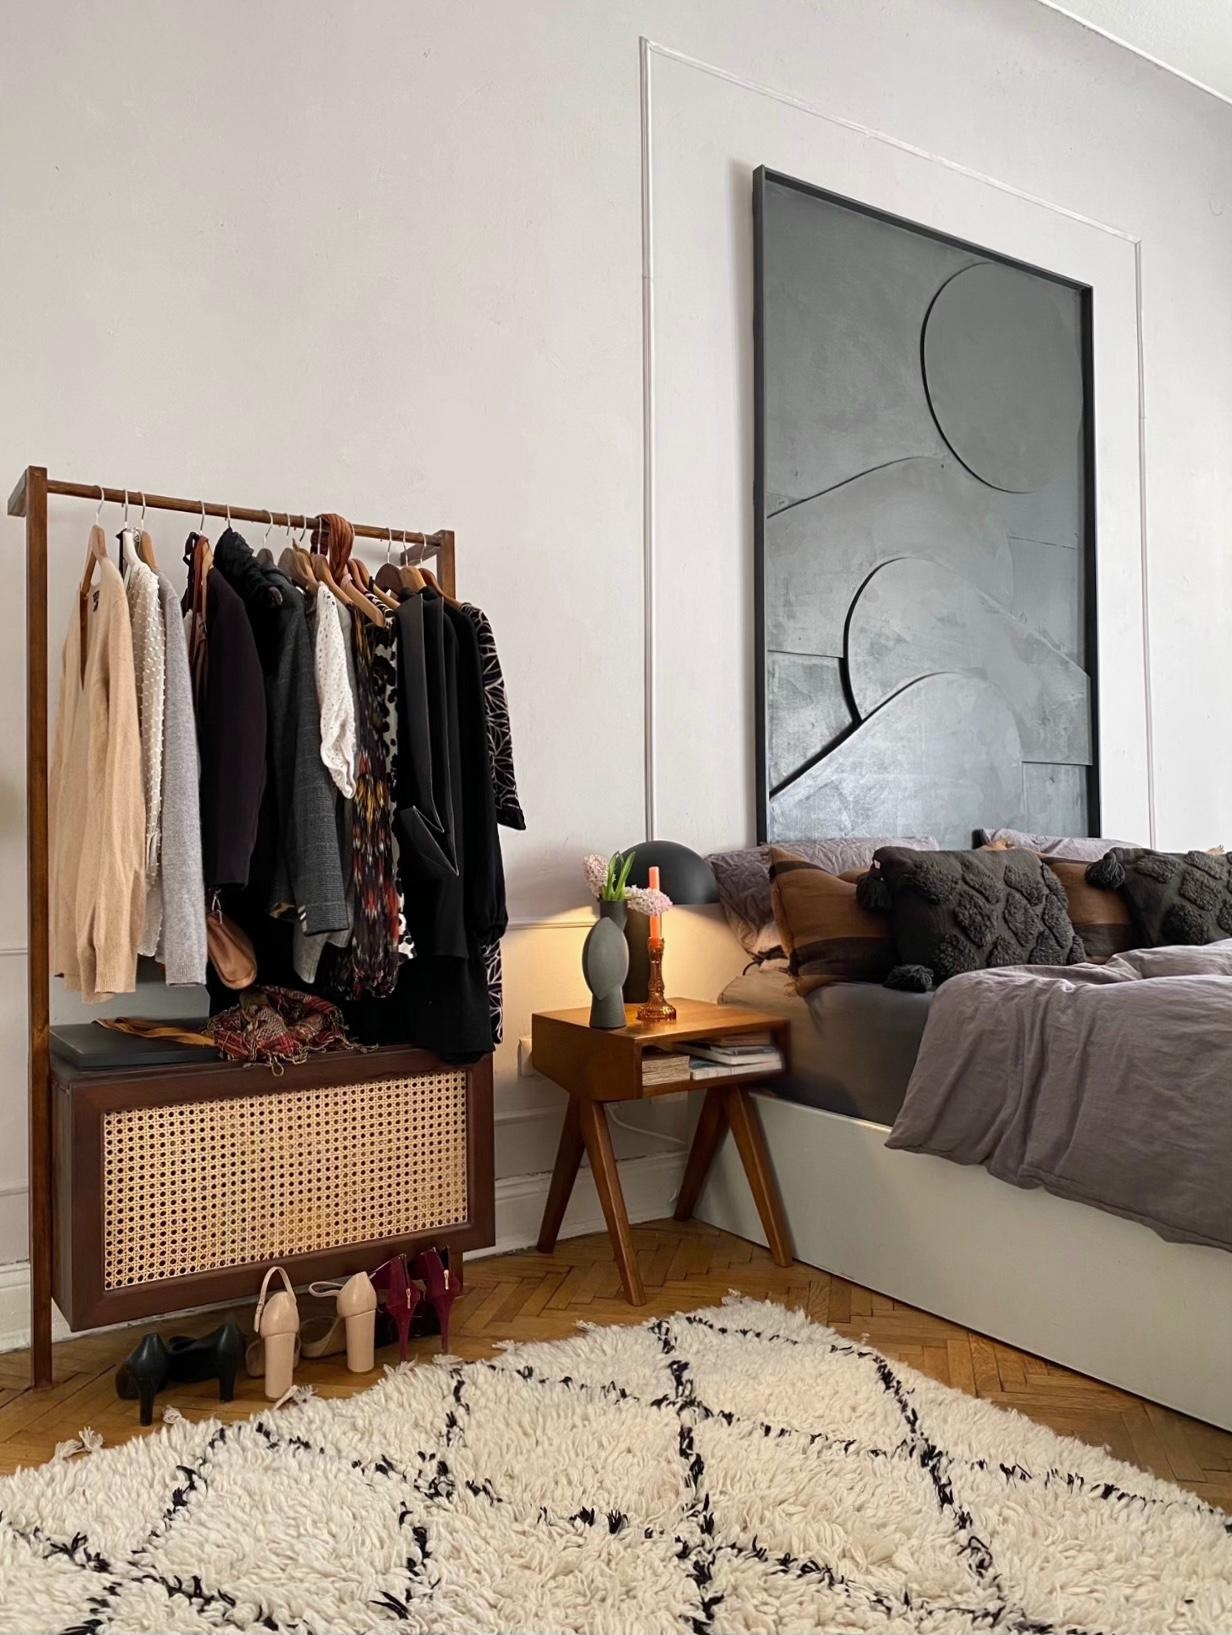 Zwei DIYs aus 2020. Die Garderobe und das Wandbild.
🌸☀️💕 #garderobe #wandbild #schlafzimmer #kunst #diy